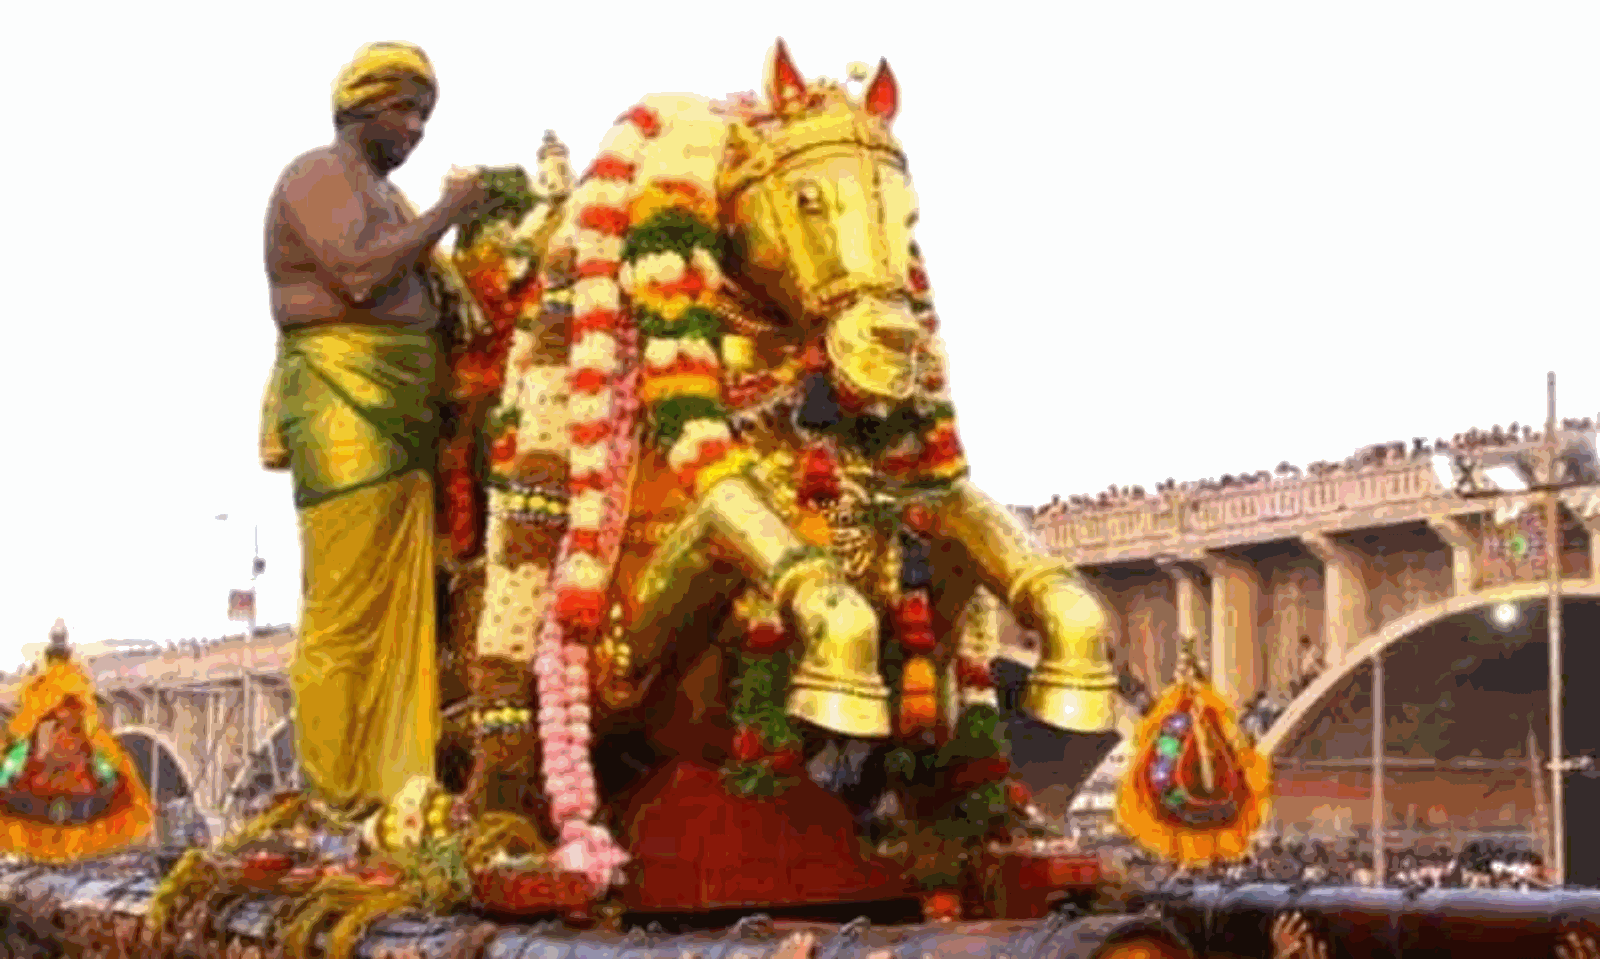 Traffic changes due to Kallalagar festival in Madurai ...